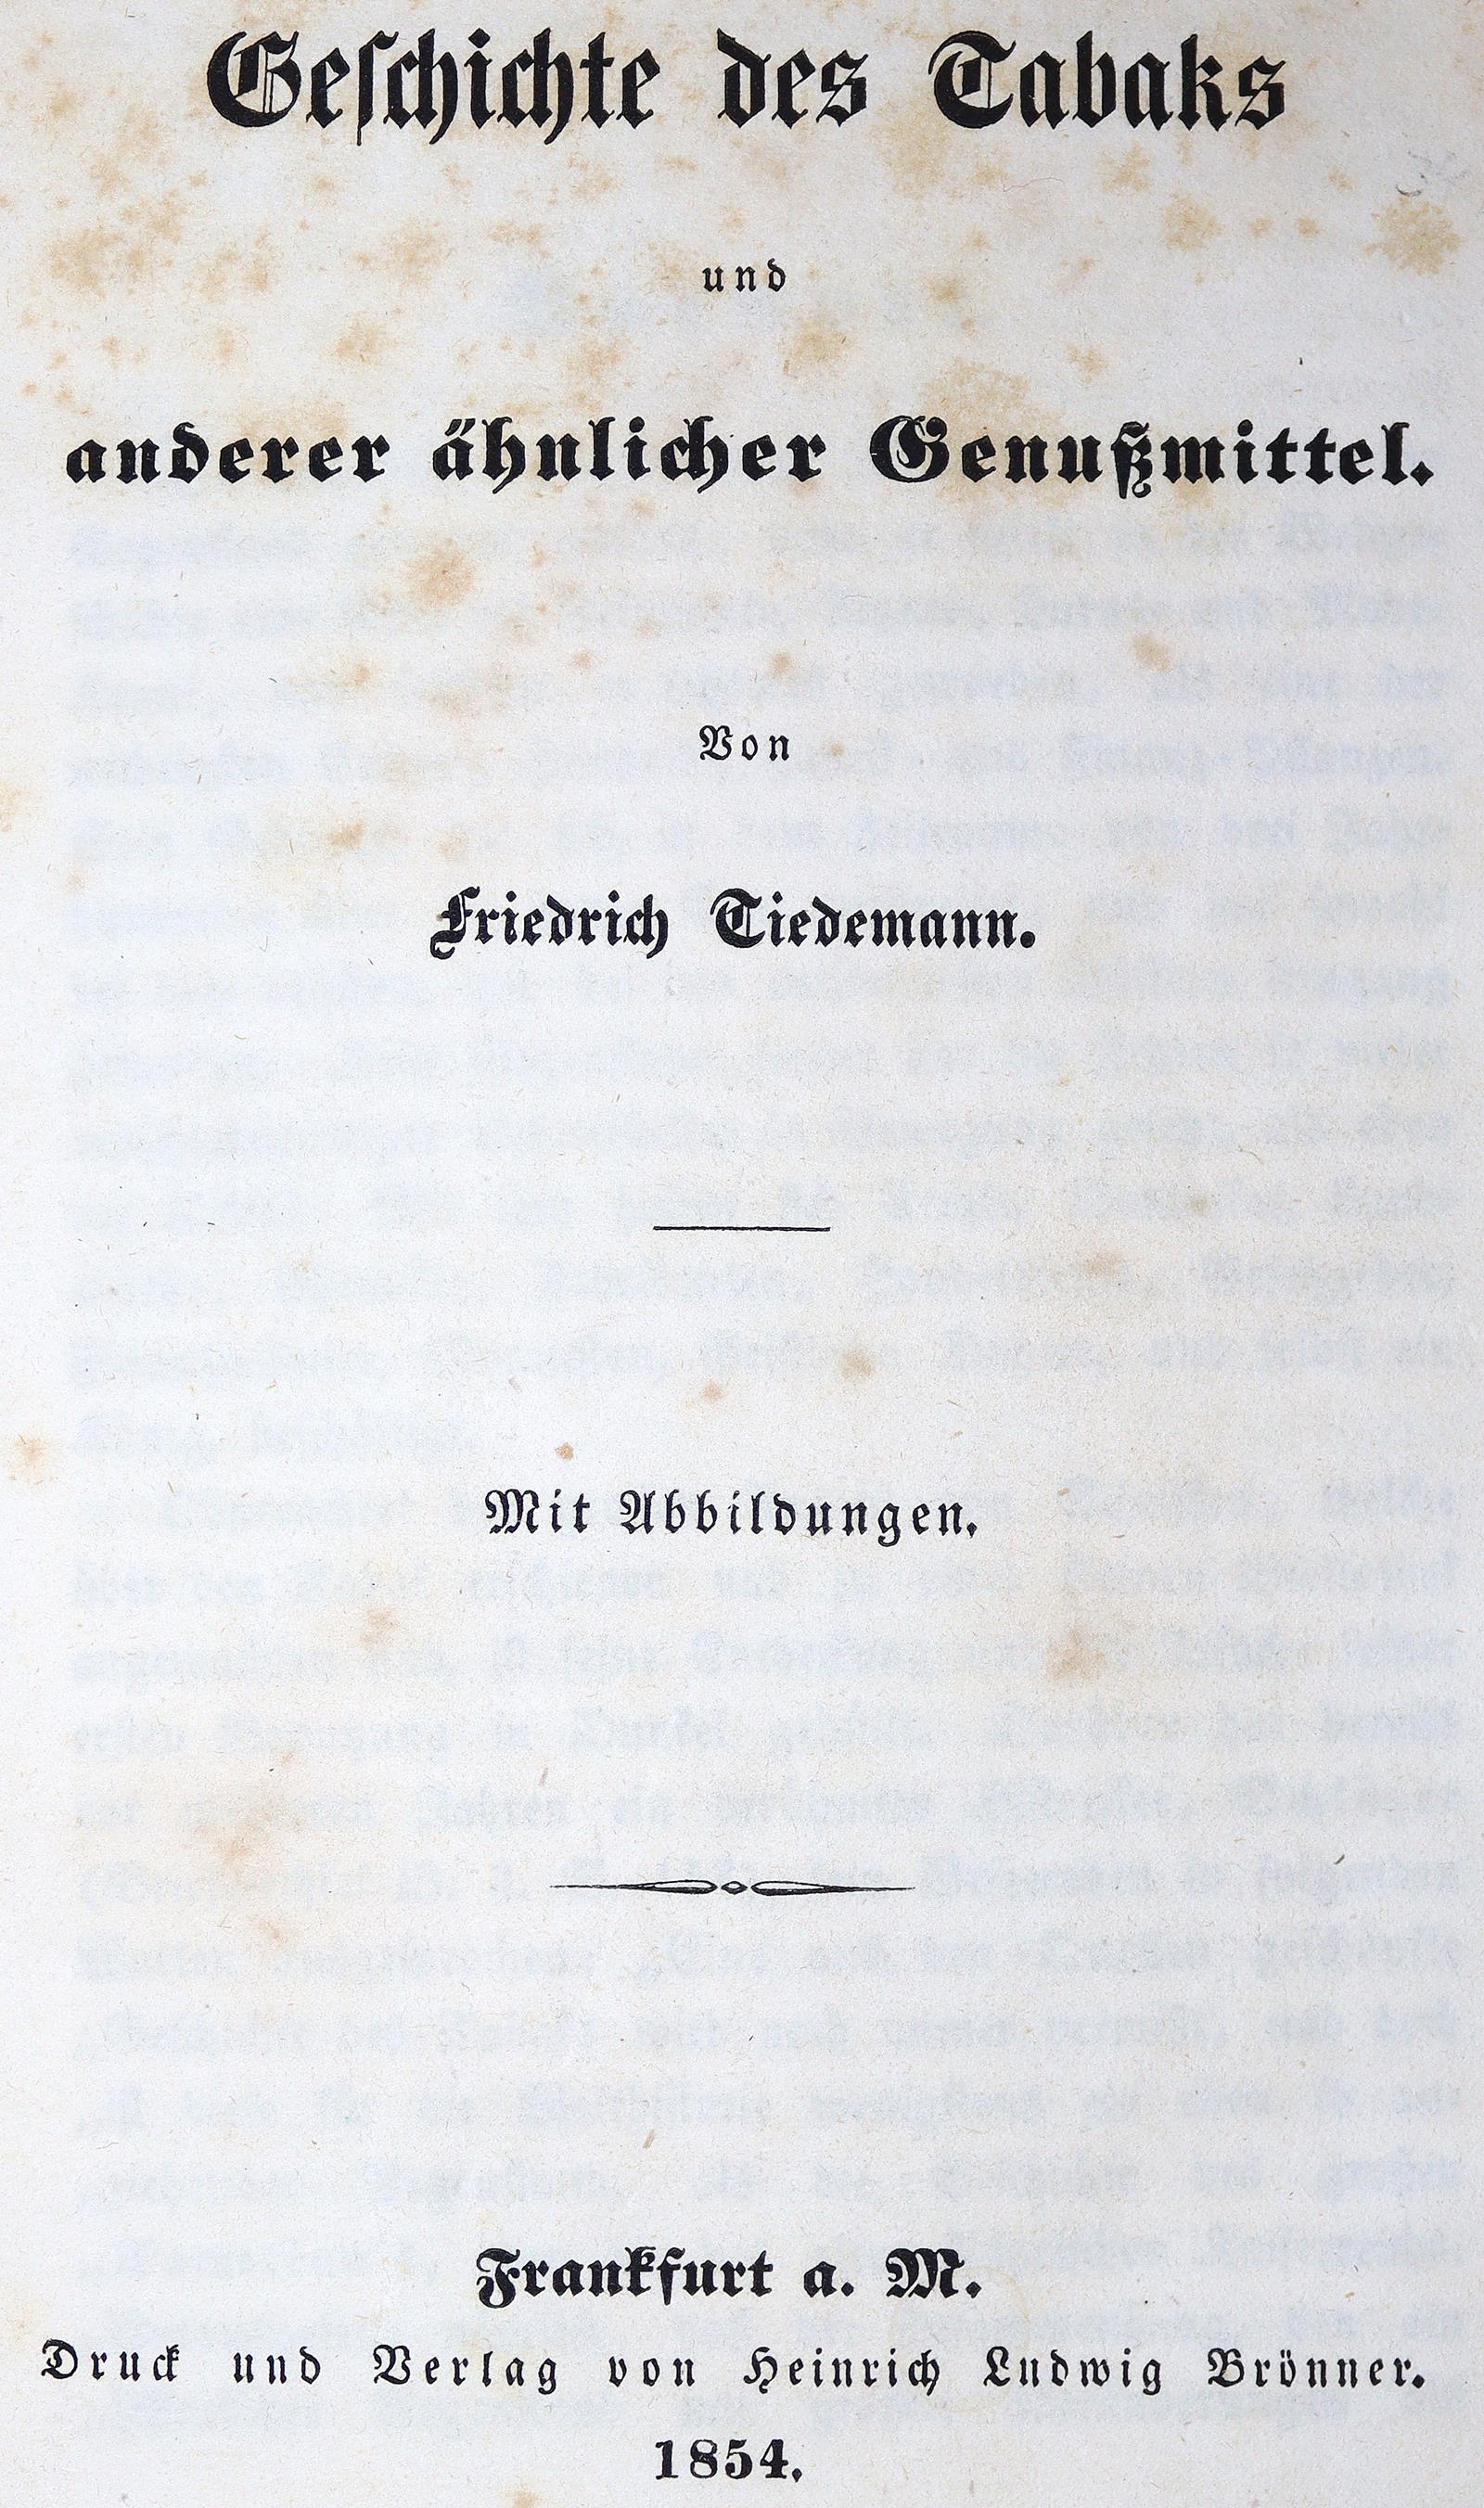 Tiedemann,F. | Bild Nr.1